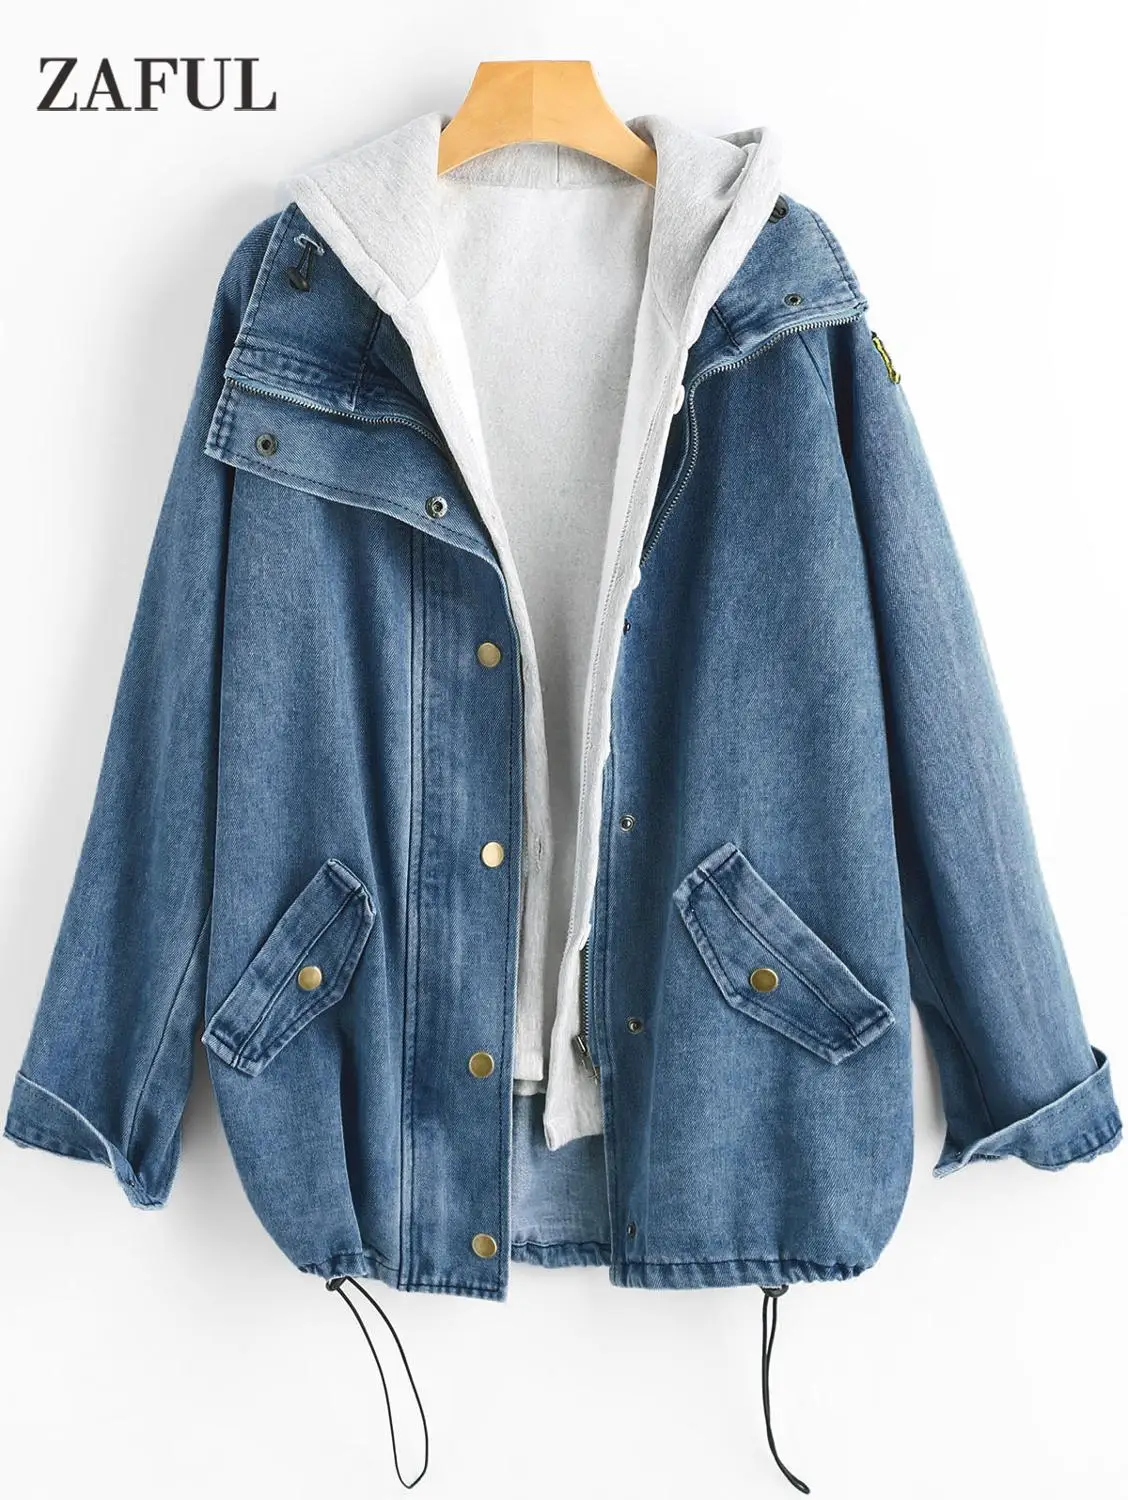 ZAFUL джинсовая куртка на пуговицах с капюшоном, 2 предмета, 3XL, женская джинсовая куртка размера плюс, Осеннее Женское пальто, модная уличная одежда, Veste Femme